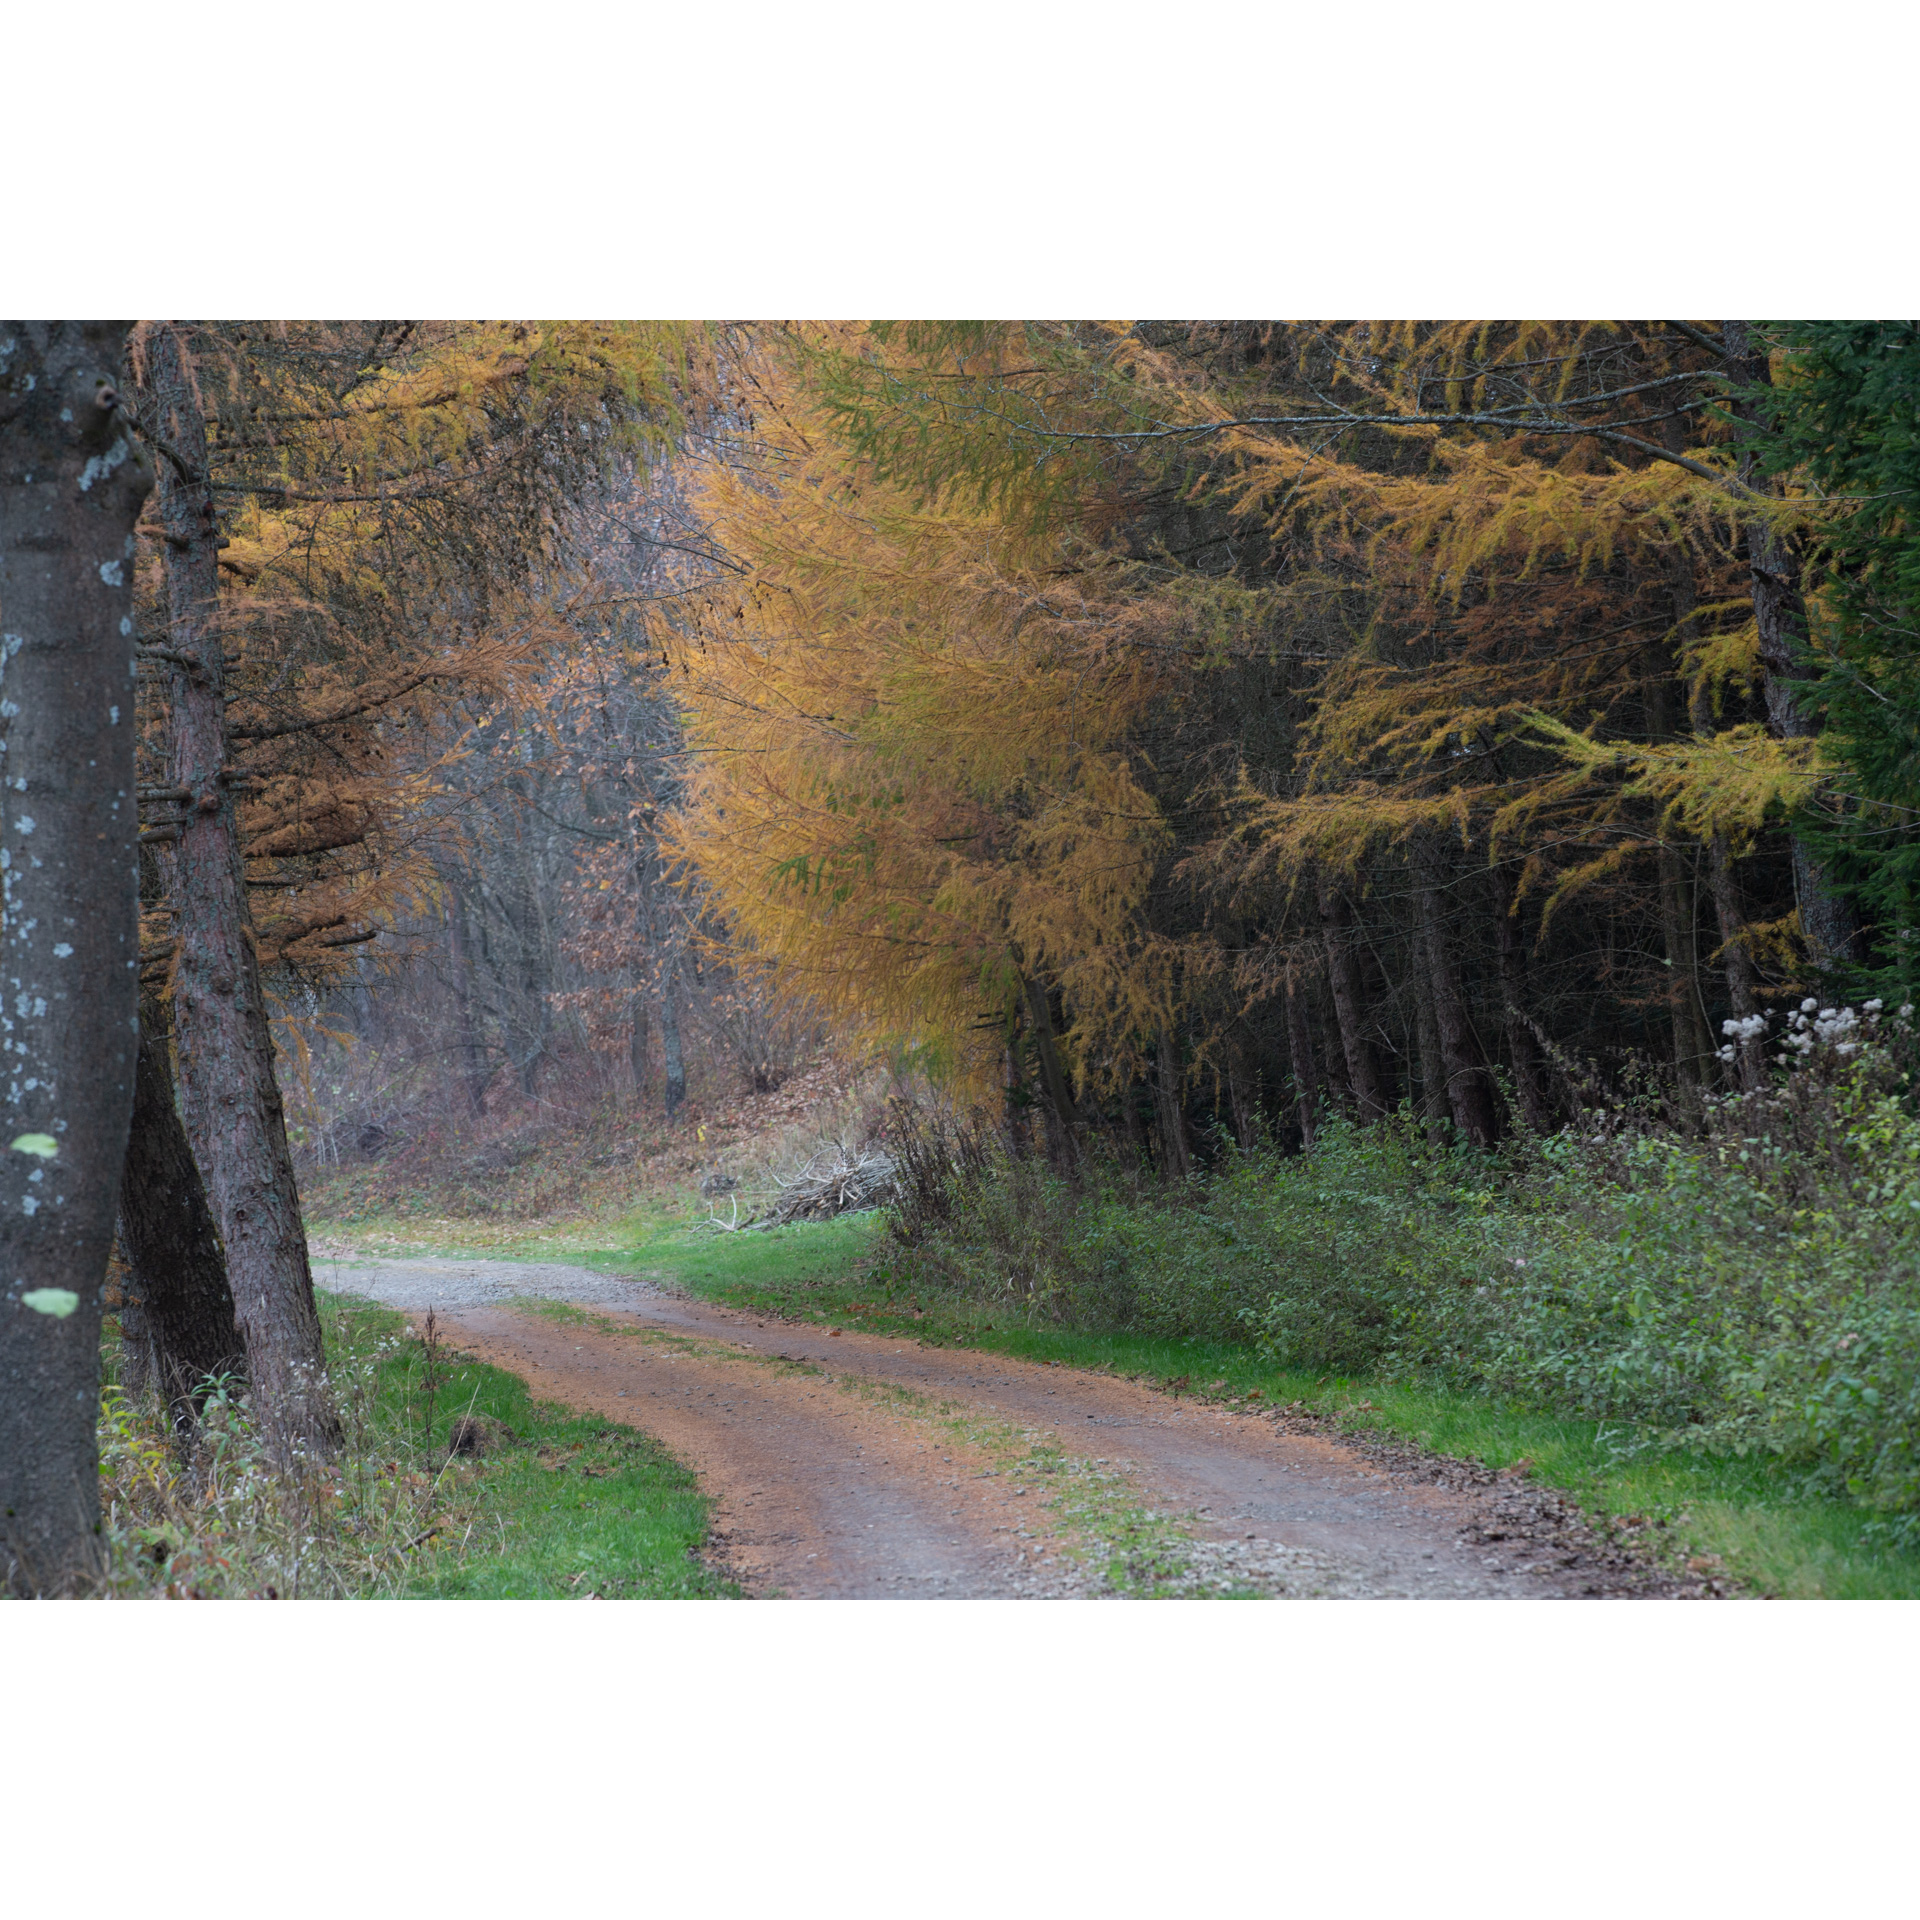 Leśna droga piaszczysta biegnąca między zażółkniętymi drzewami iglastymi i zielonymi krzaczkami